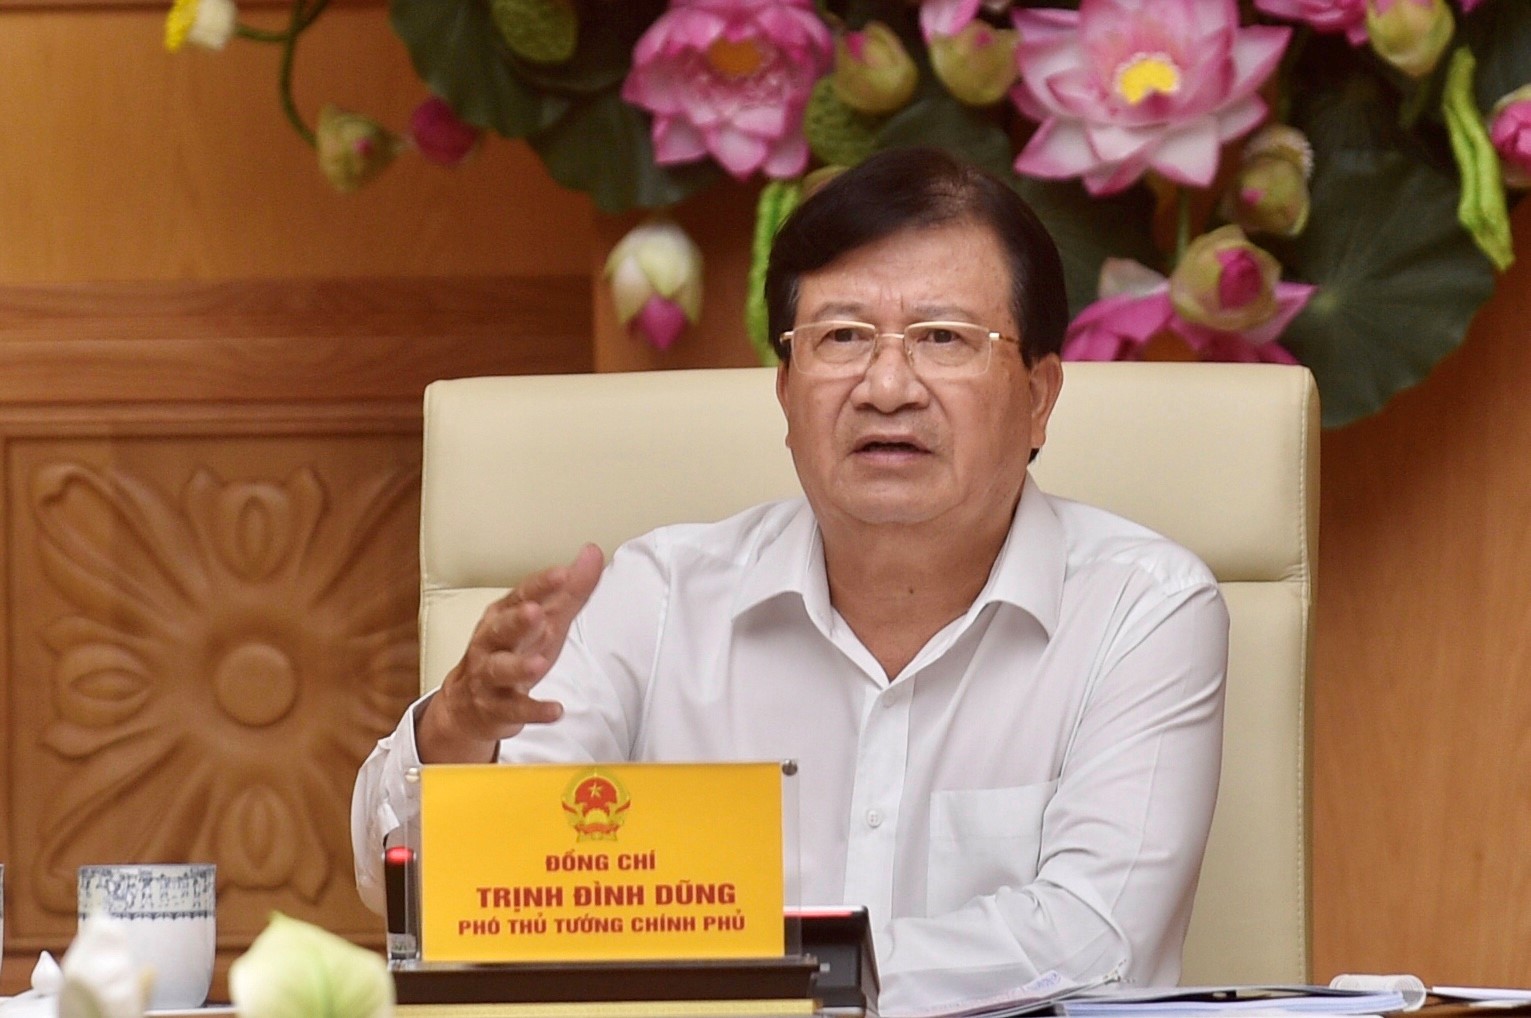 Phó Thủ tướng Trịnh Đình Dũng phát biểu tại phiên họp. Ảnh: VGP/Nhật Bắc